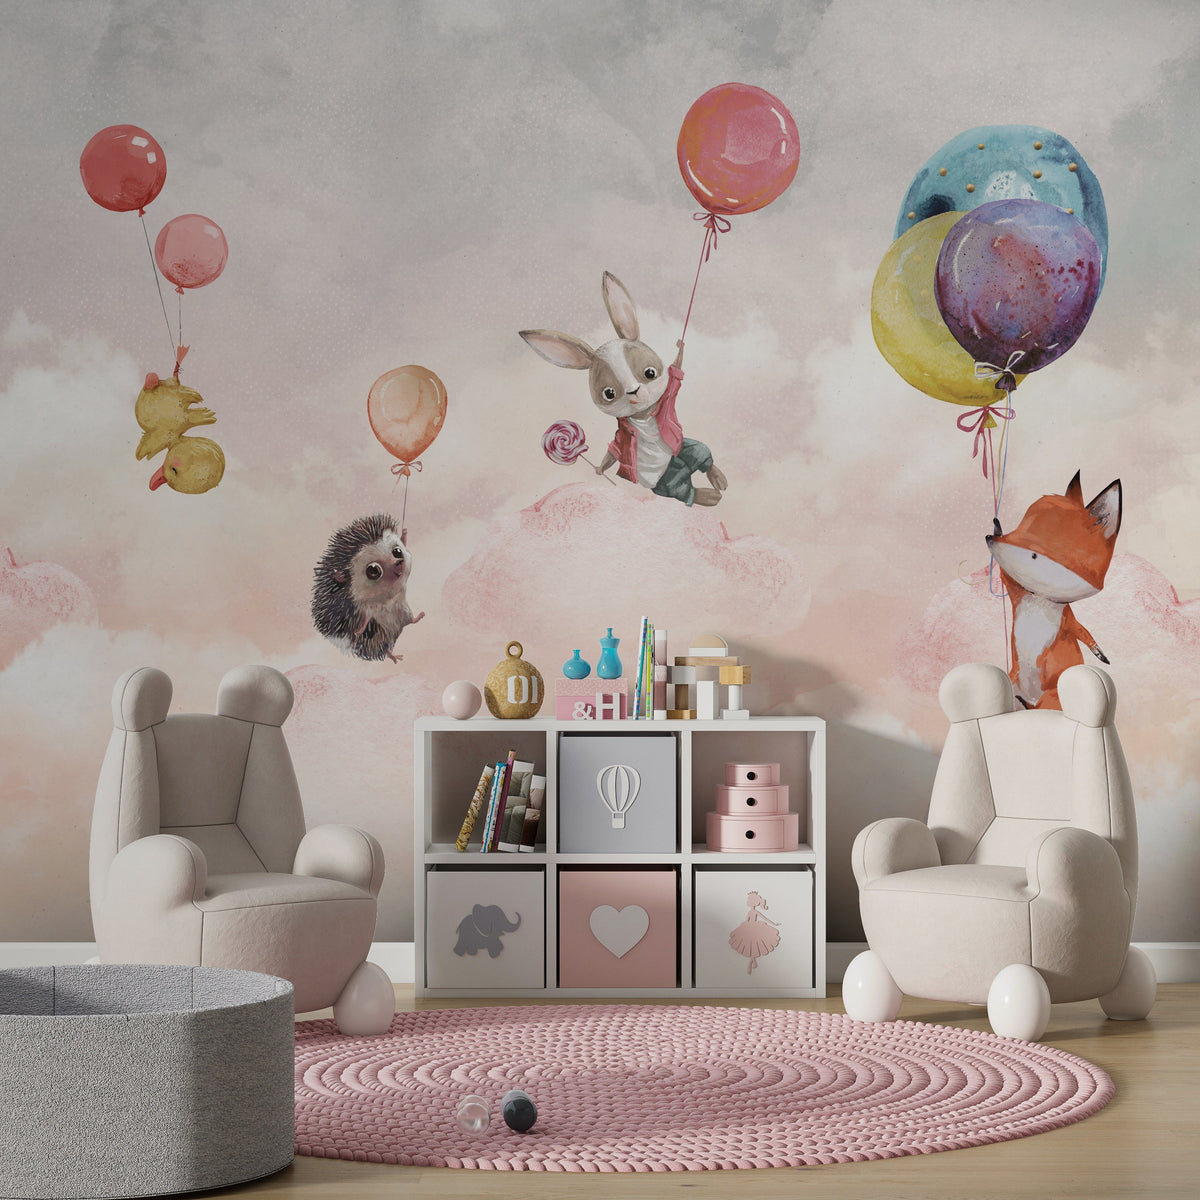 Animals on Balloon - Kids Nursery Wallpaper Mural-ChandeliersDecor